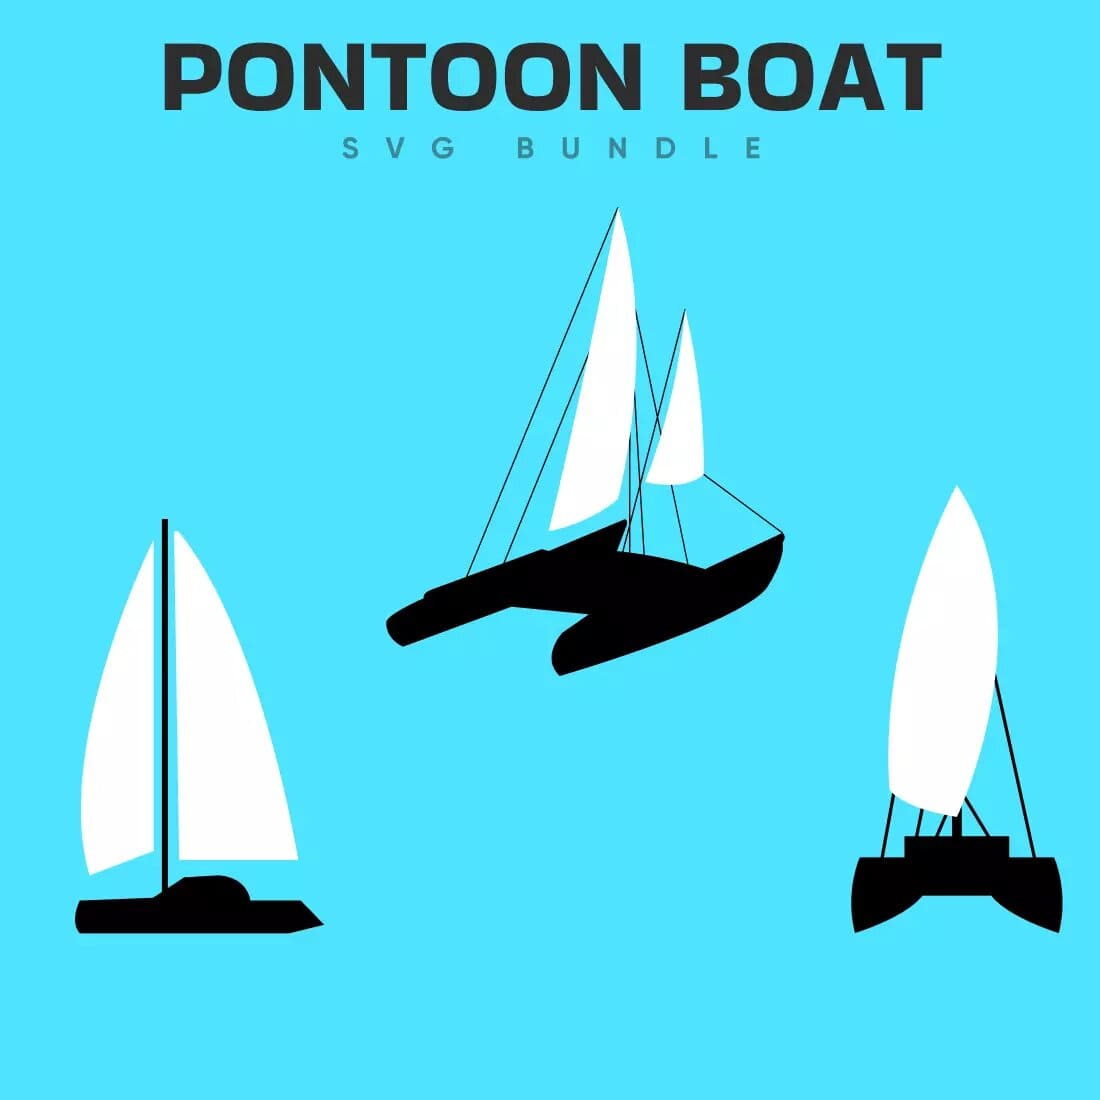 Pontoon Boat SVG Bundle Preview 7.